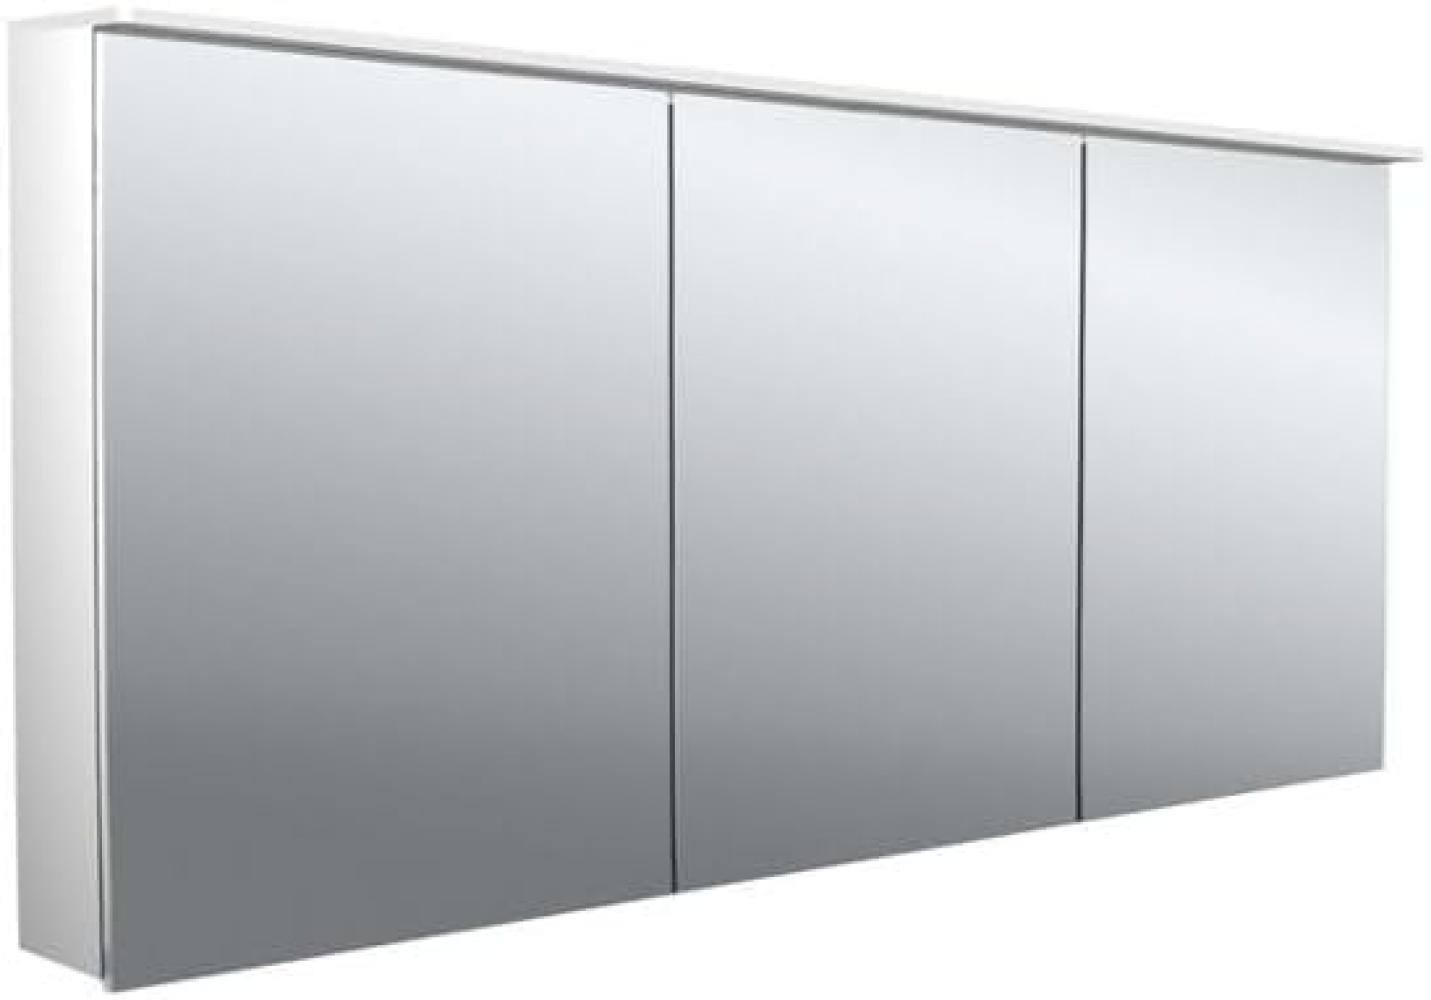 Emco pure 2 Design LED Lichtspiegelschrank mit Lichtsegel, 3 Türen, 1600x711x153mm, 979705407 - 979705407 Bild 1